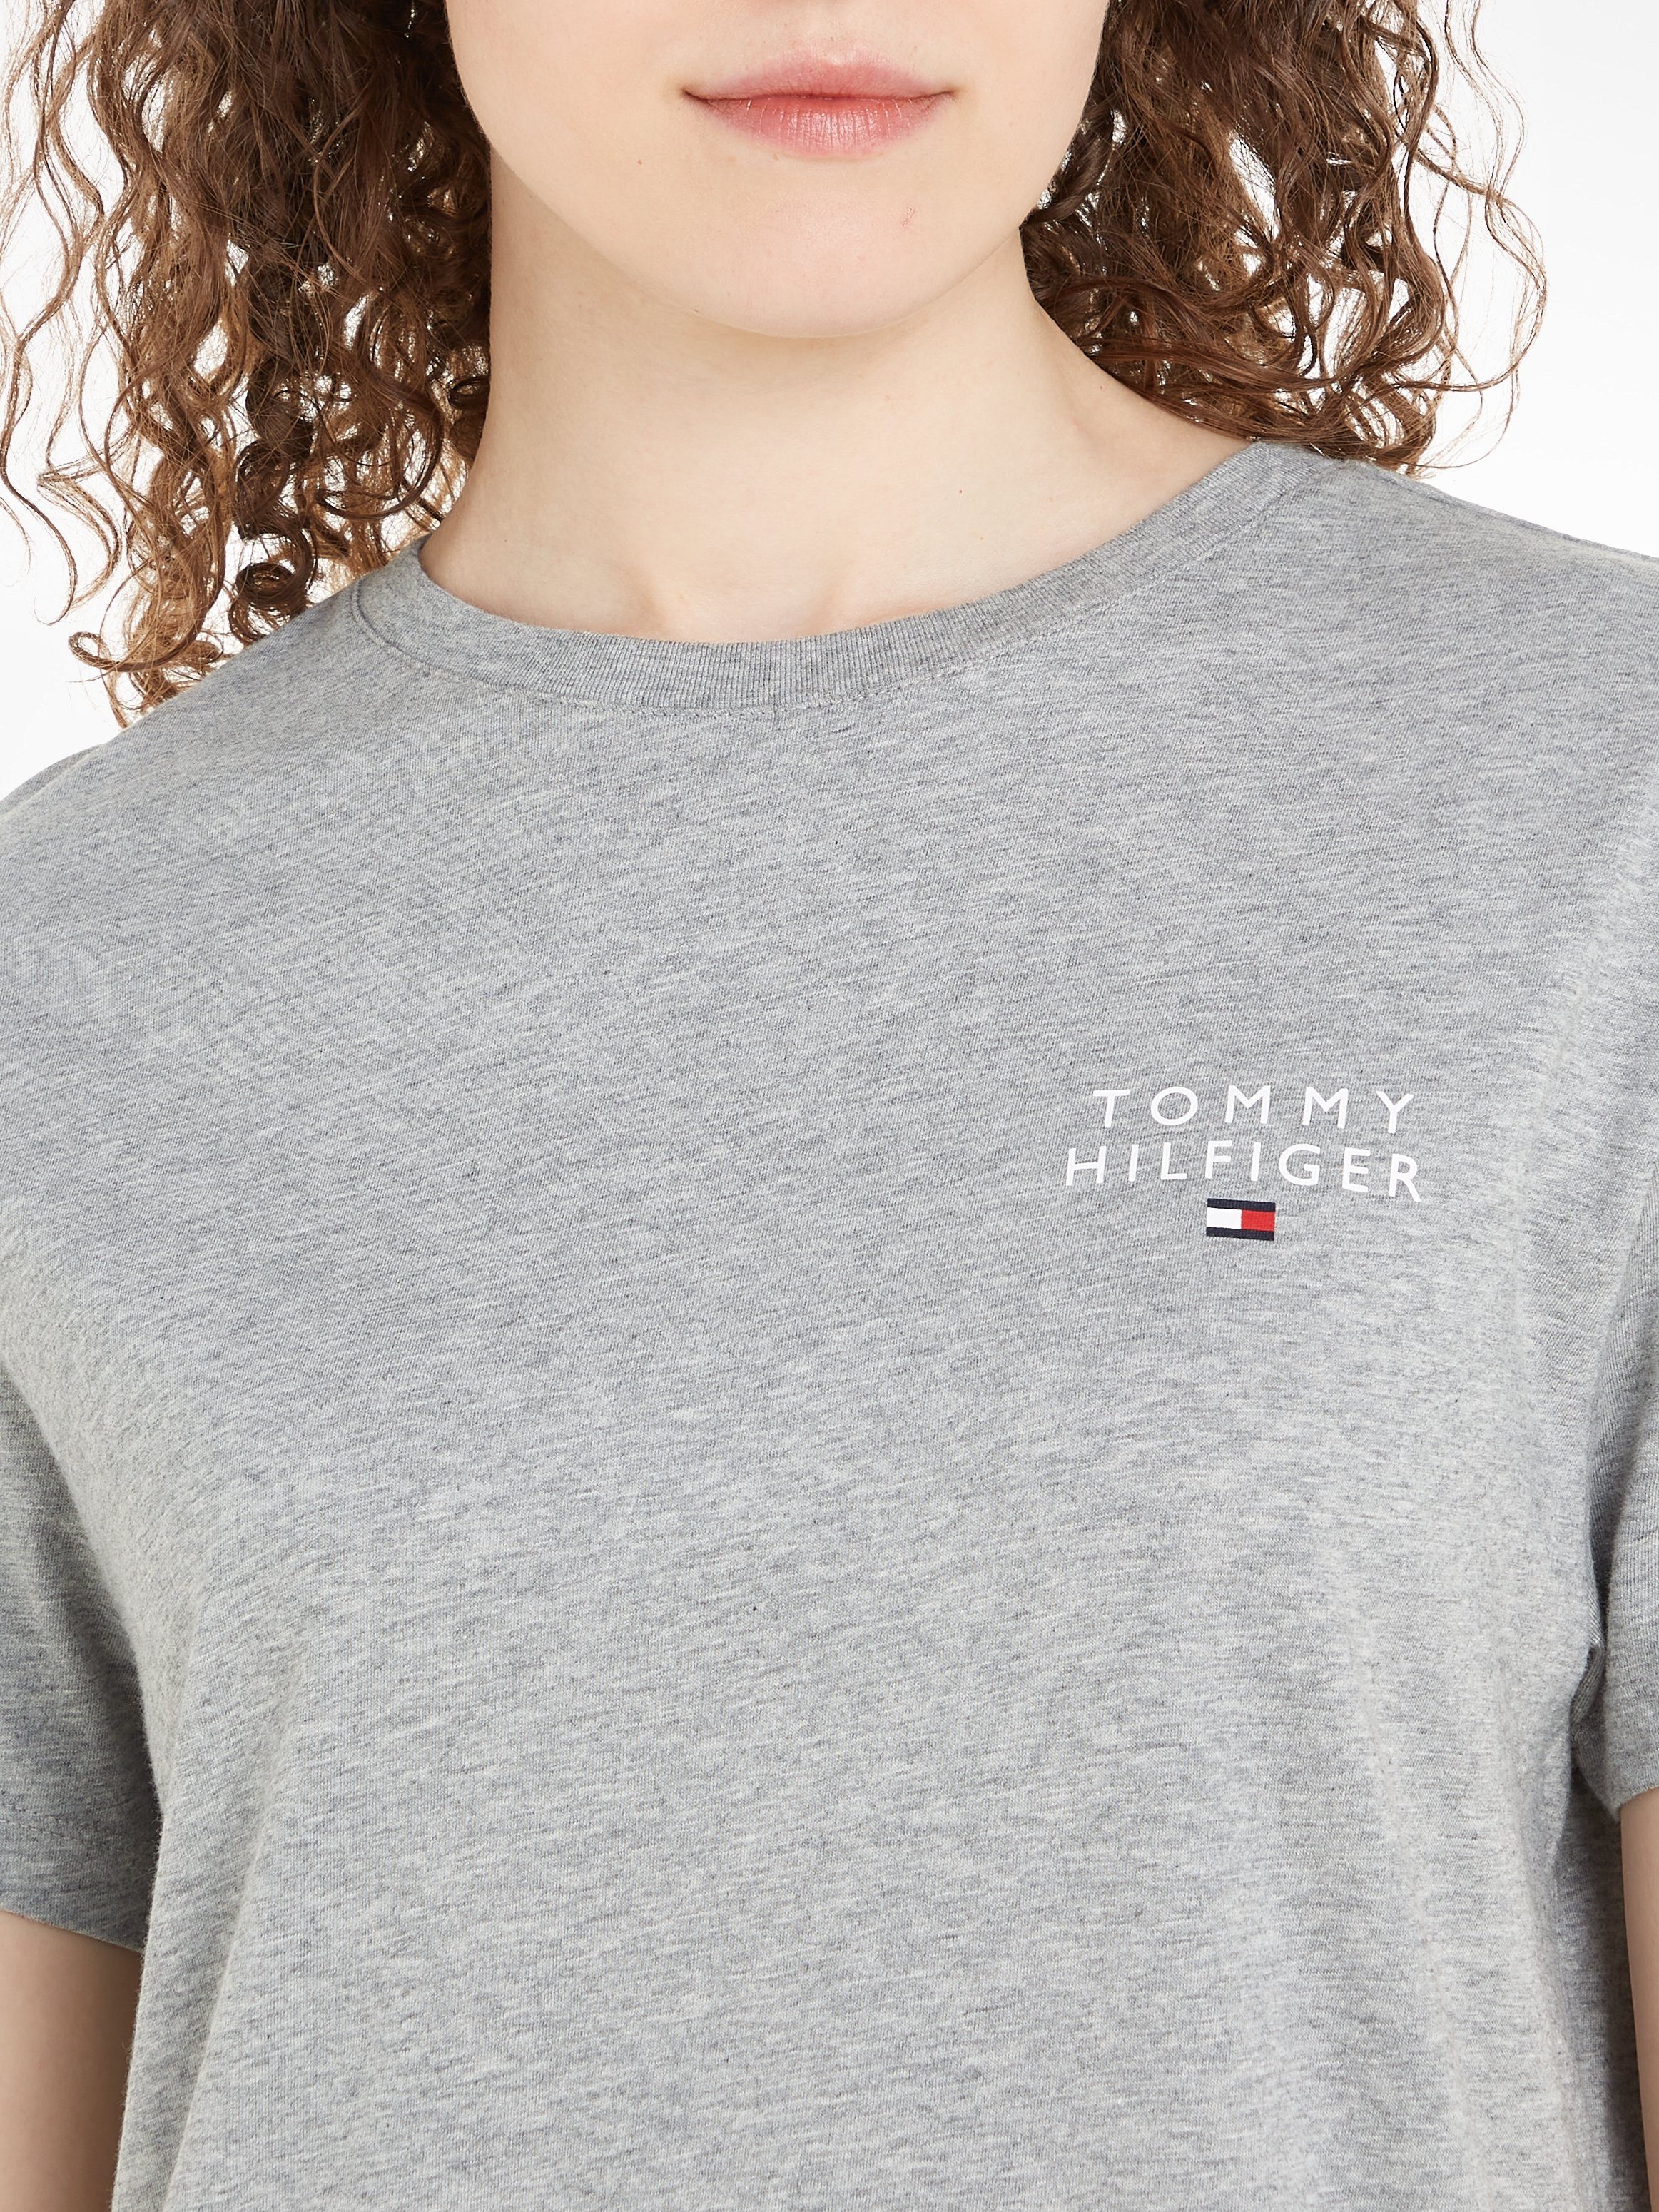 DRESS T-SHIRT SLEEVE Hilfiger Hilfiger SHORT Tommy mit Tommy Underwear Nachthemd Logoaufdruck